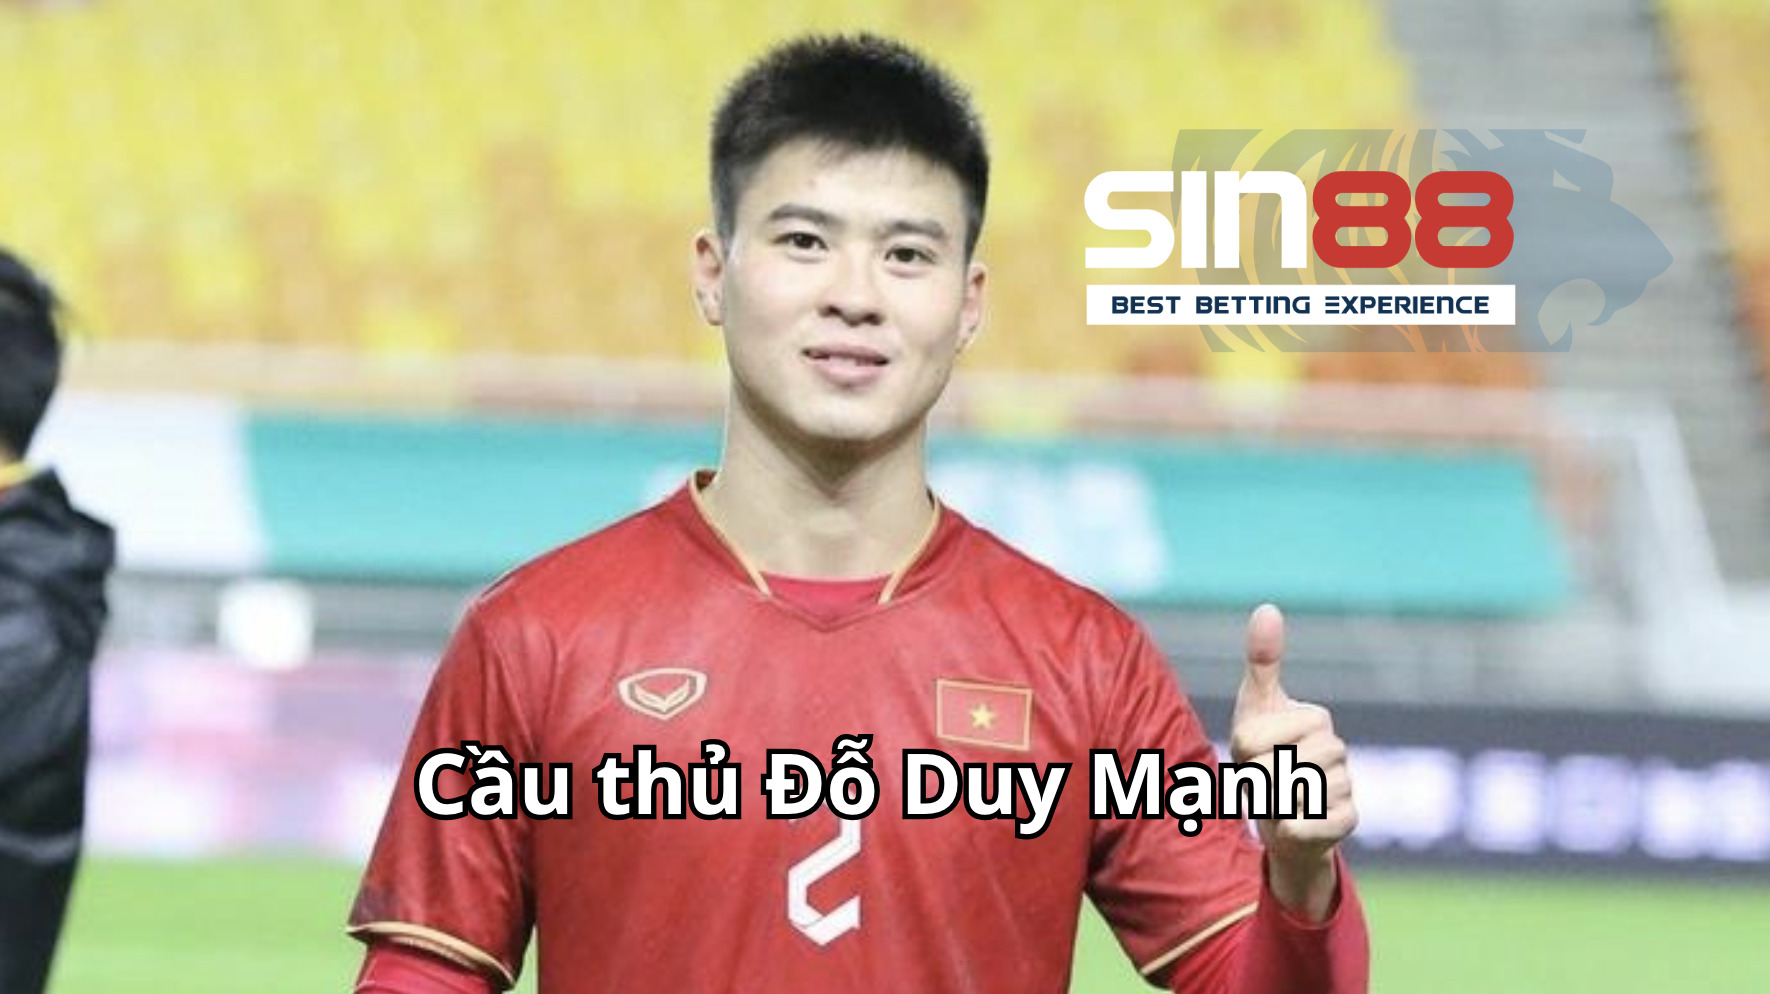 Cầu thủ Đỗ Duy Mạnh đẹp trai nhất Việt Nam